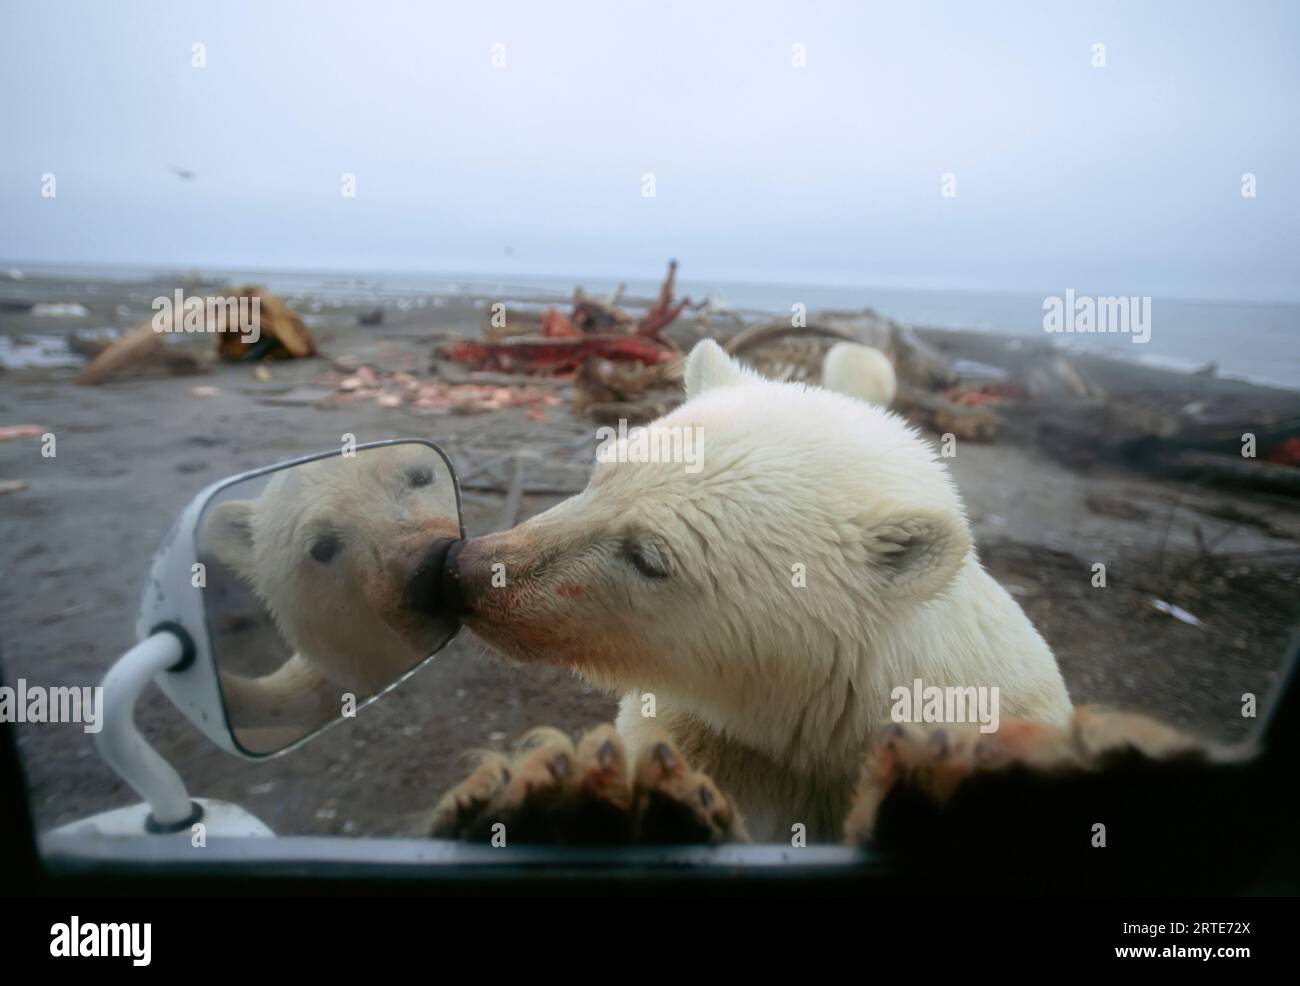 L'orso polare (Ursus maritimus) guarda lo specchio retrovisore di un veicolo; North Slope, Alaska, Stati Uniti d'America Foto Stock